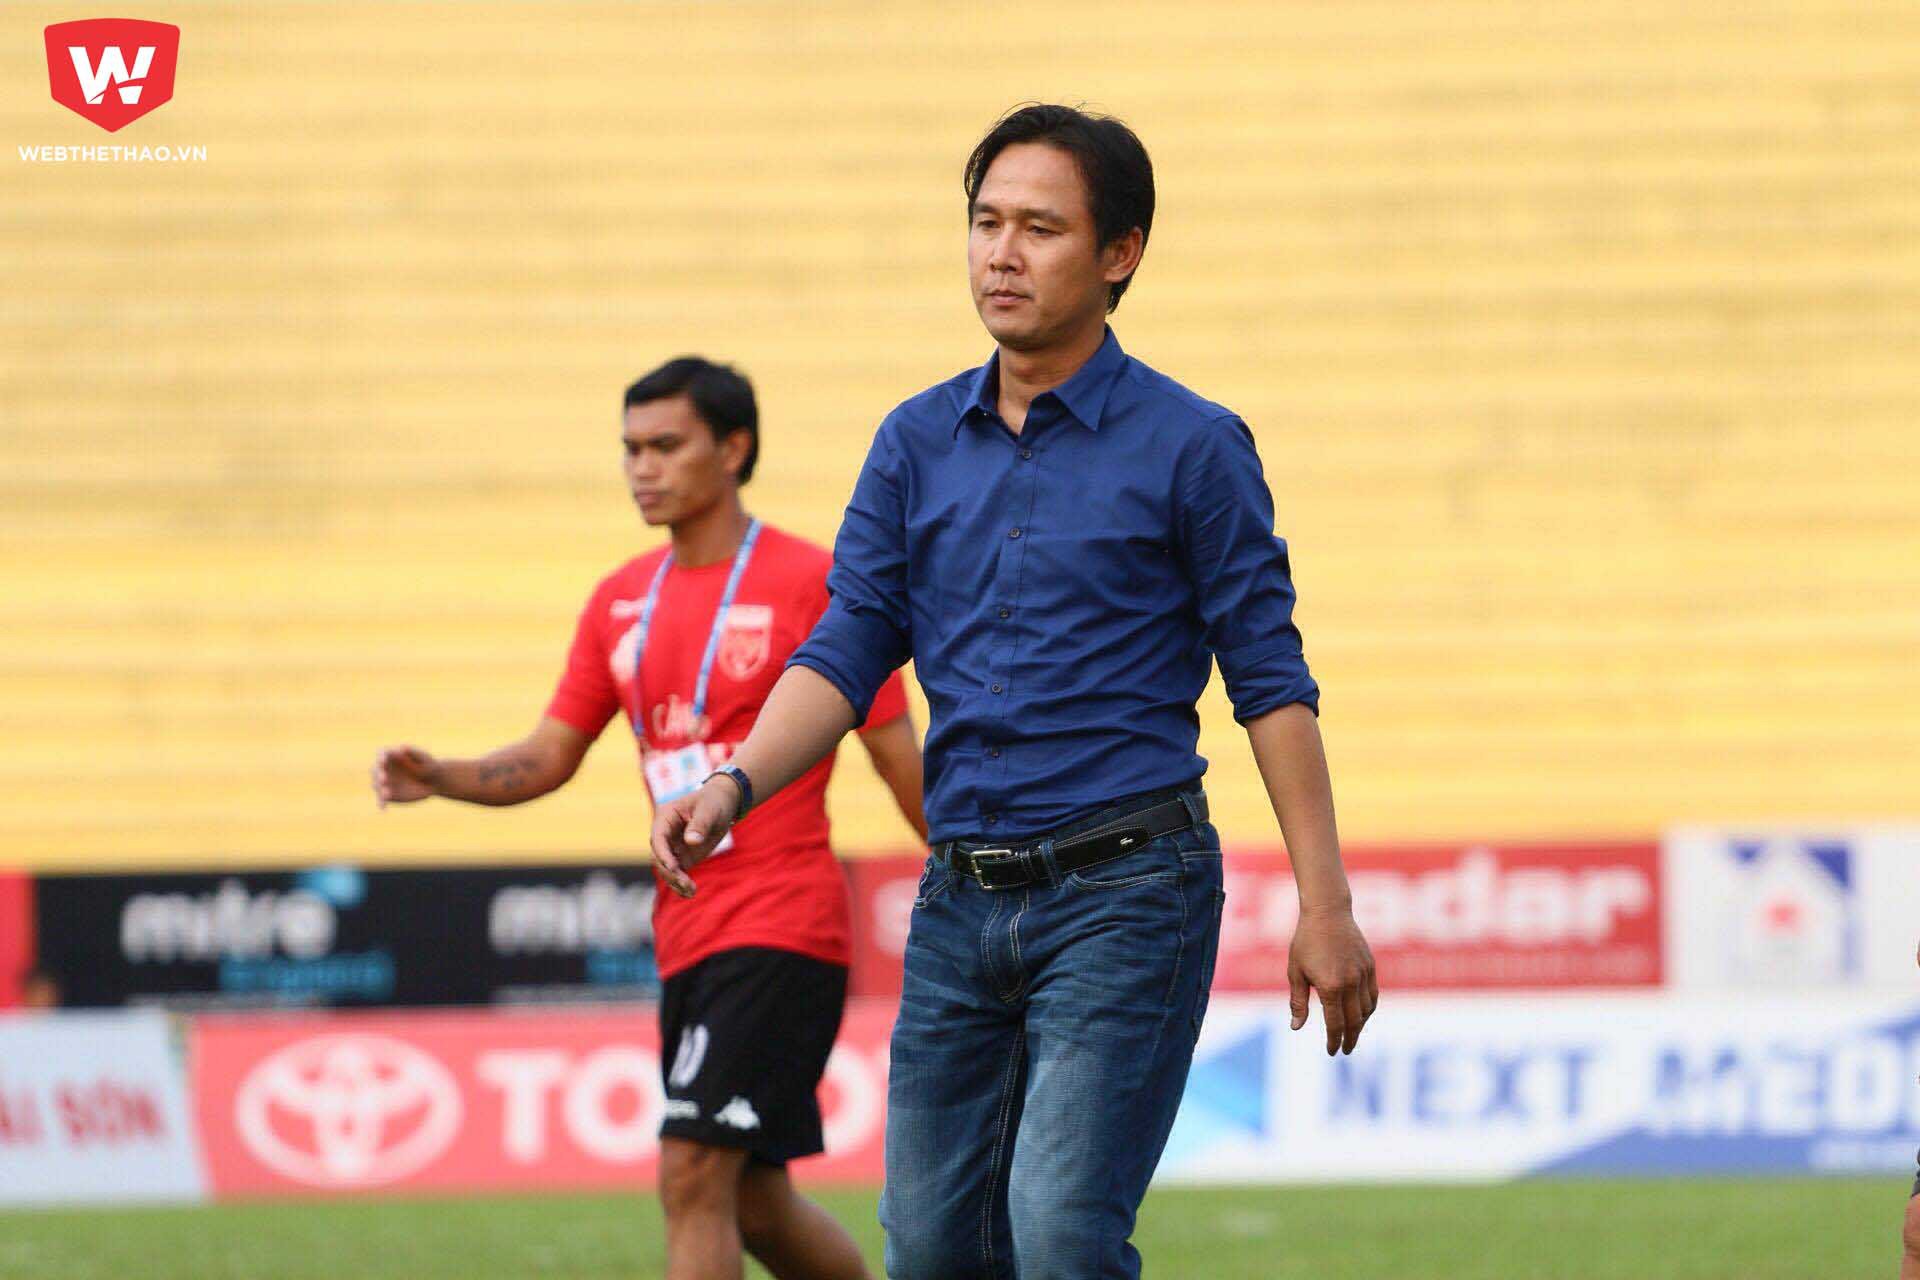 Đây là trận đầu tiên Minh Phương giữ chức thuyền trưởng của đội chủ sân Tân An. Hợp đồng của cựu tiền vệ sinh năm 1980 mới hoàn thành hợp đồng với CLB Long An trước trận đấu 1 ngày.